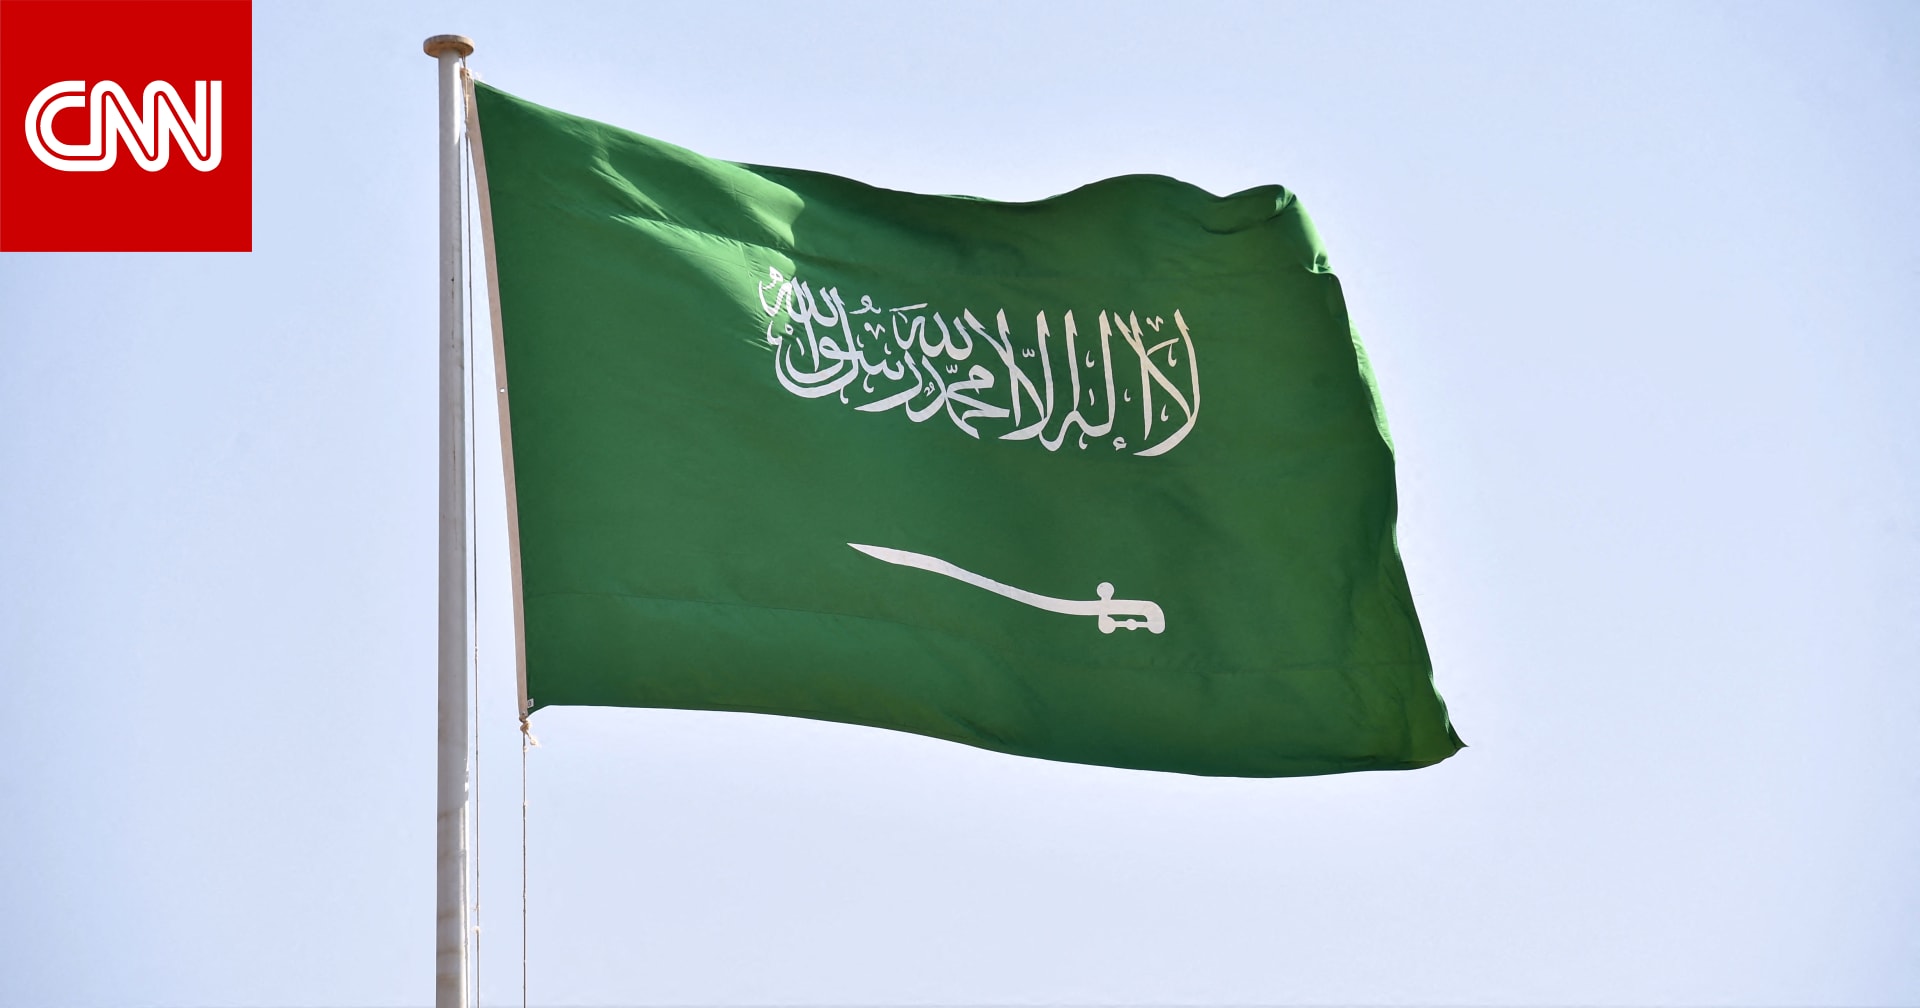 السعودية.. وزير الشؤون الإسلامية يحذر من “المتحزبين المتخندقين وراء جماعات الإرهاب والتطرف”